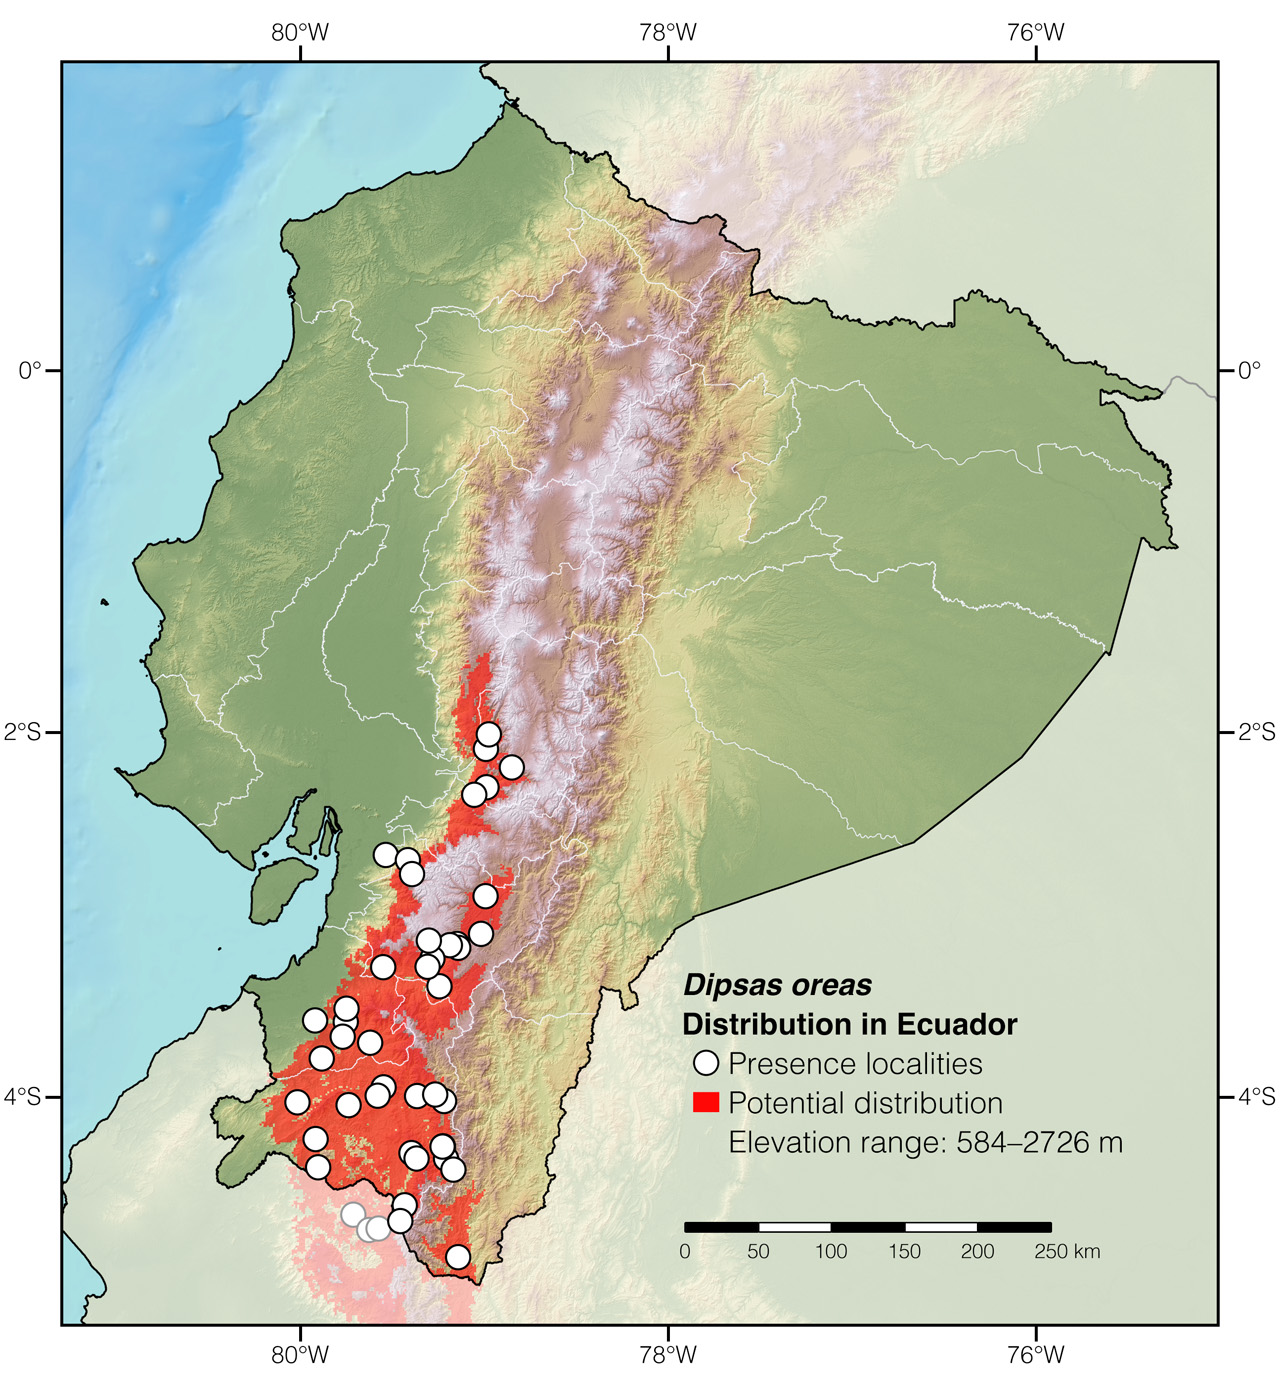 Distribution of Dipsas oreas in Ecuador